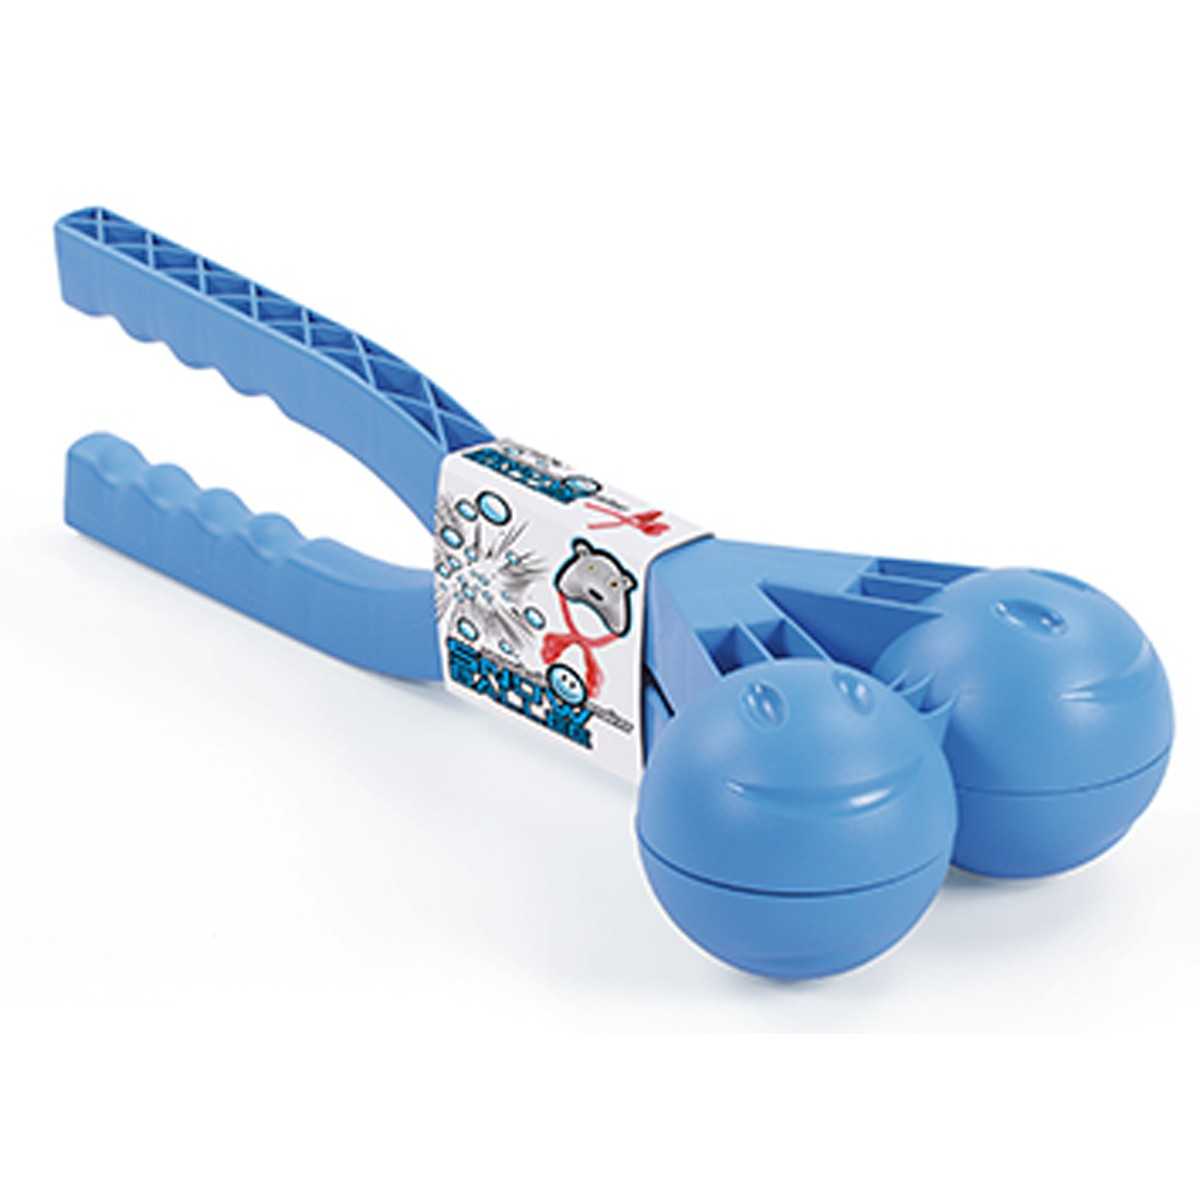 Sniego gniūžtės gaminimo įrankis, mėlynas